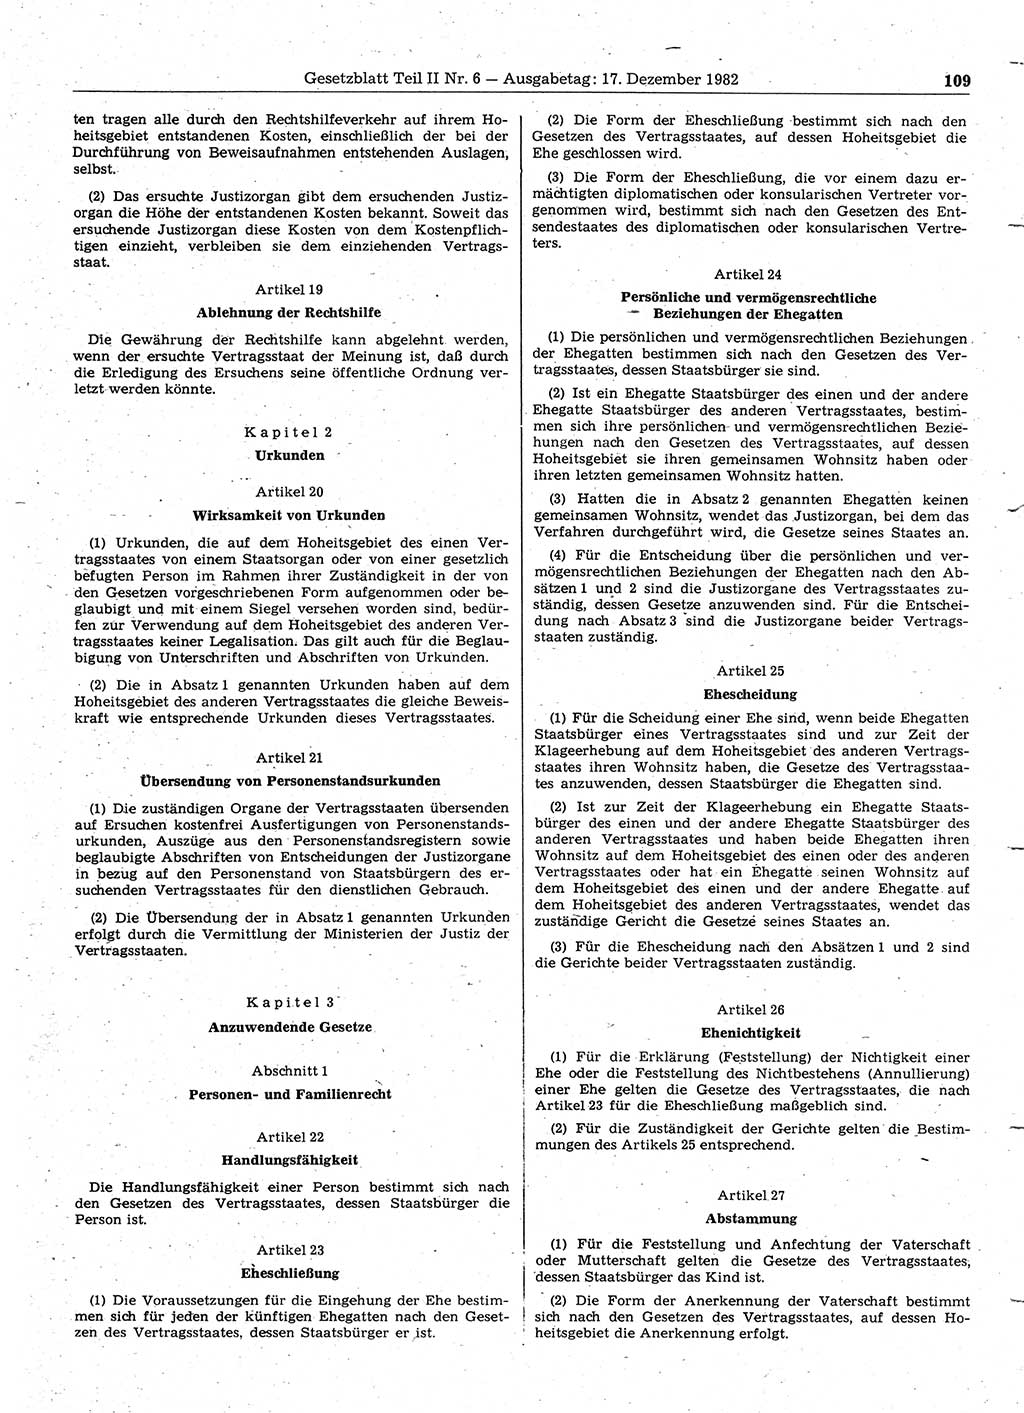 Gesetzblatt (GBl.) der Deutschen Demokratischen Republik (DDR) Teil ⅠⅠ 1982, Seite 109 (GBl. DDR ⅠⅠ 1982, S. 109)